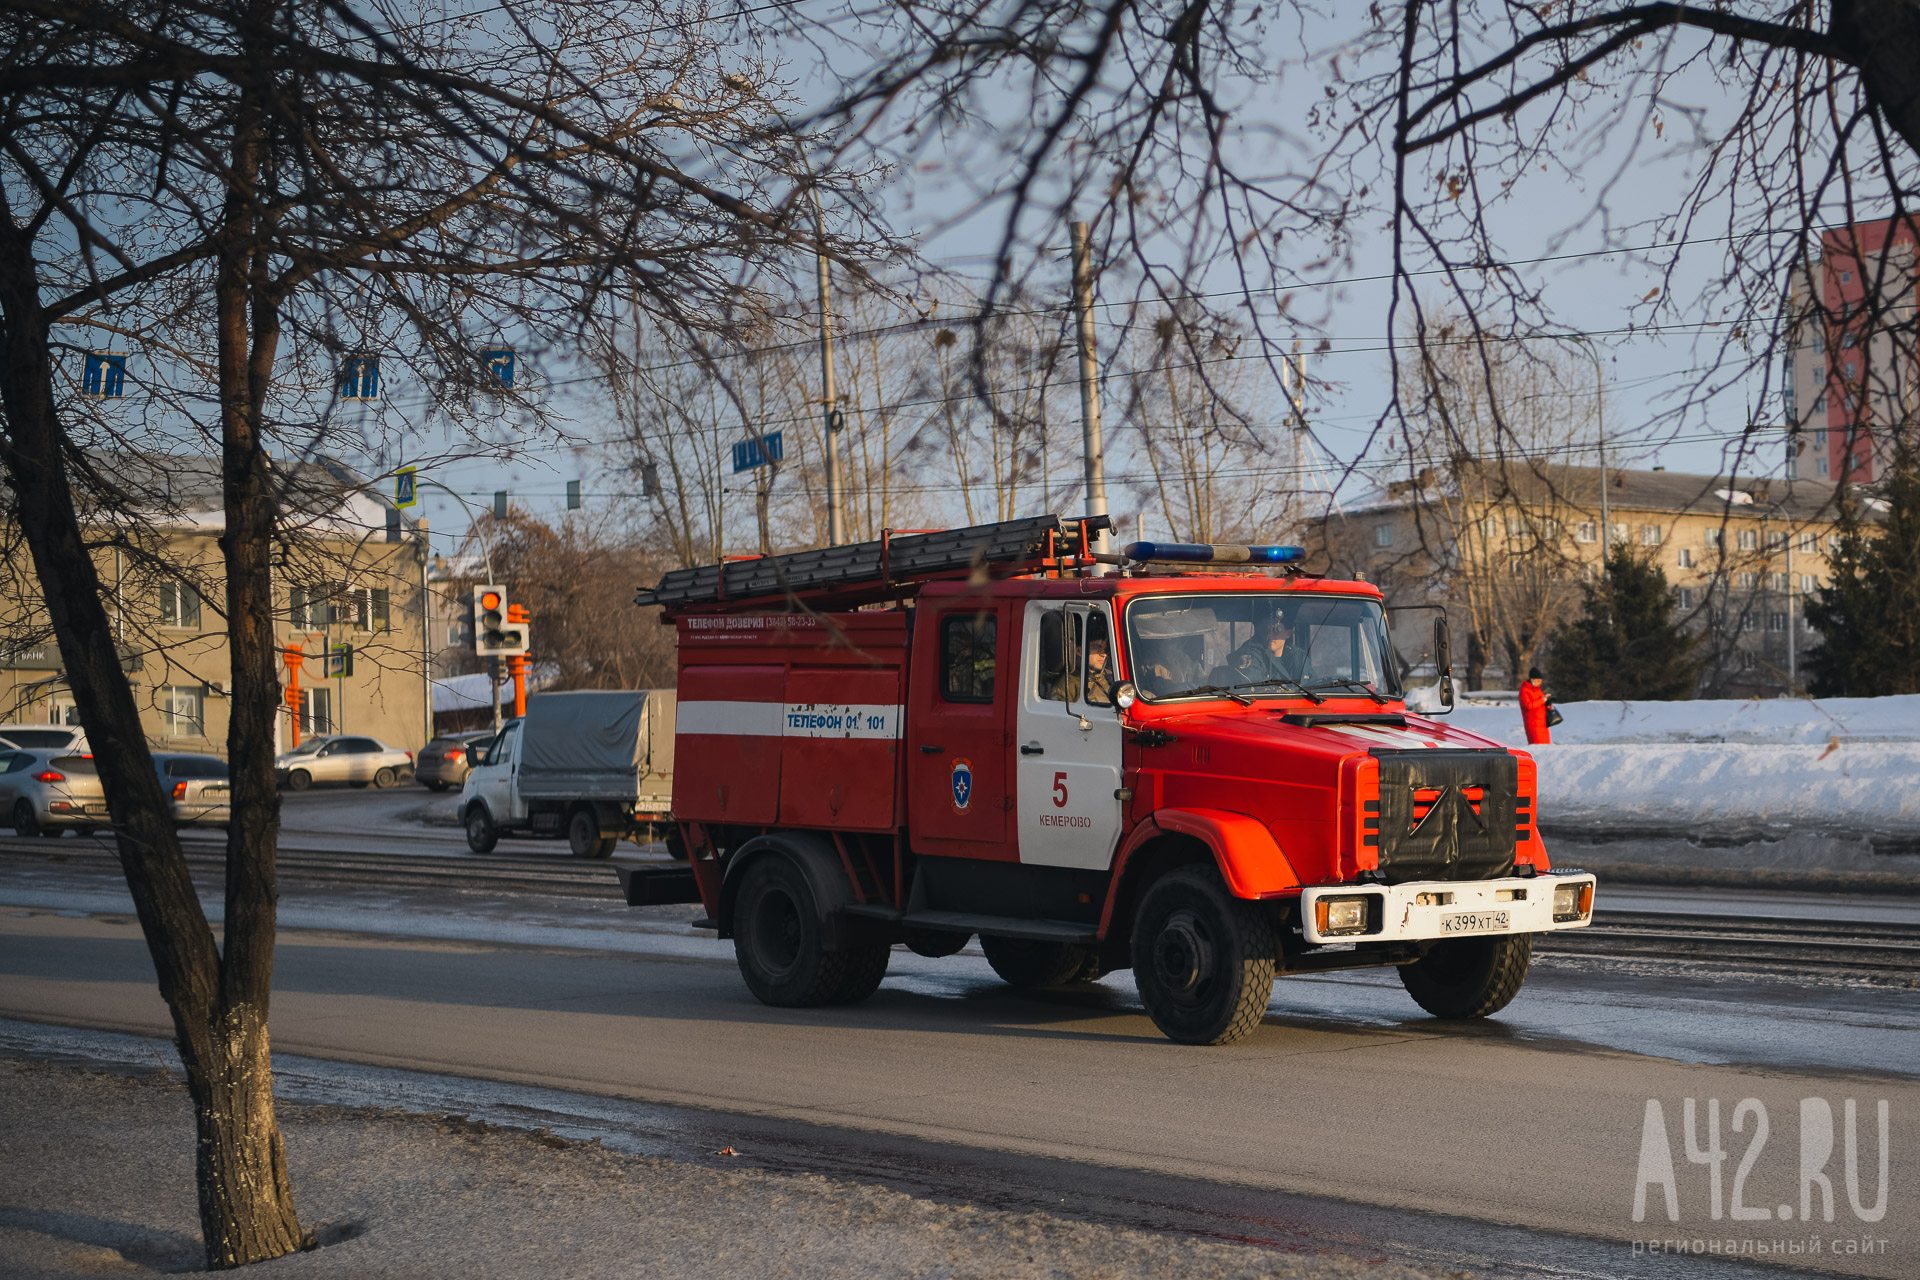 В Кемерове в доме на улице Волгоградской вспыхнул пожар: огнеборцы спасли 5 человек, ещё 18 эвакуировались